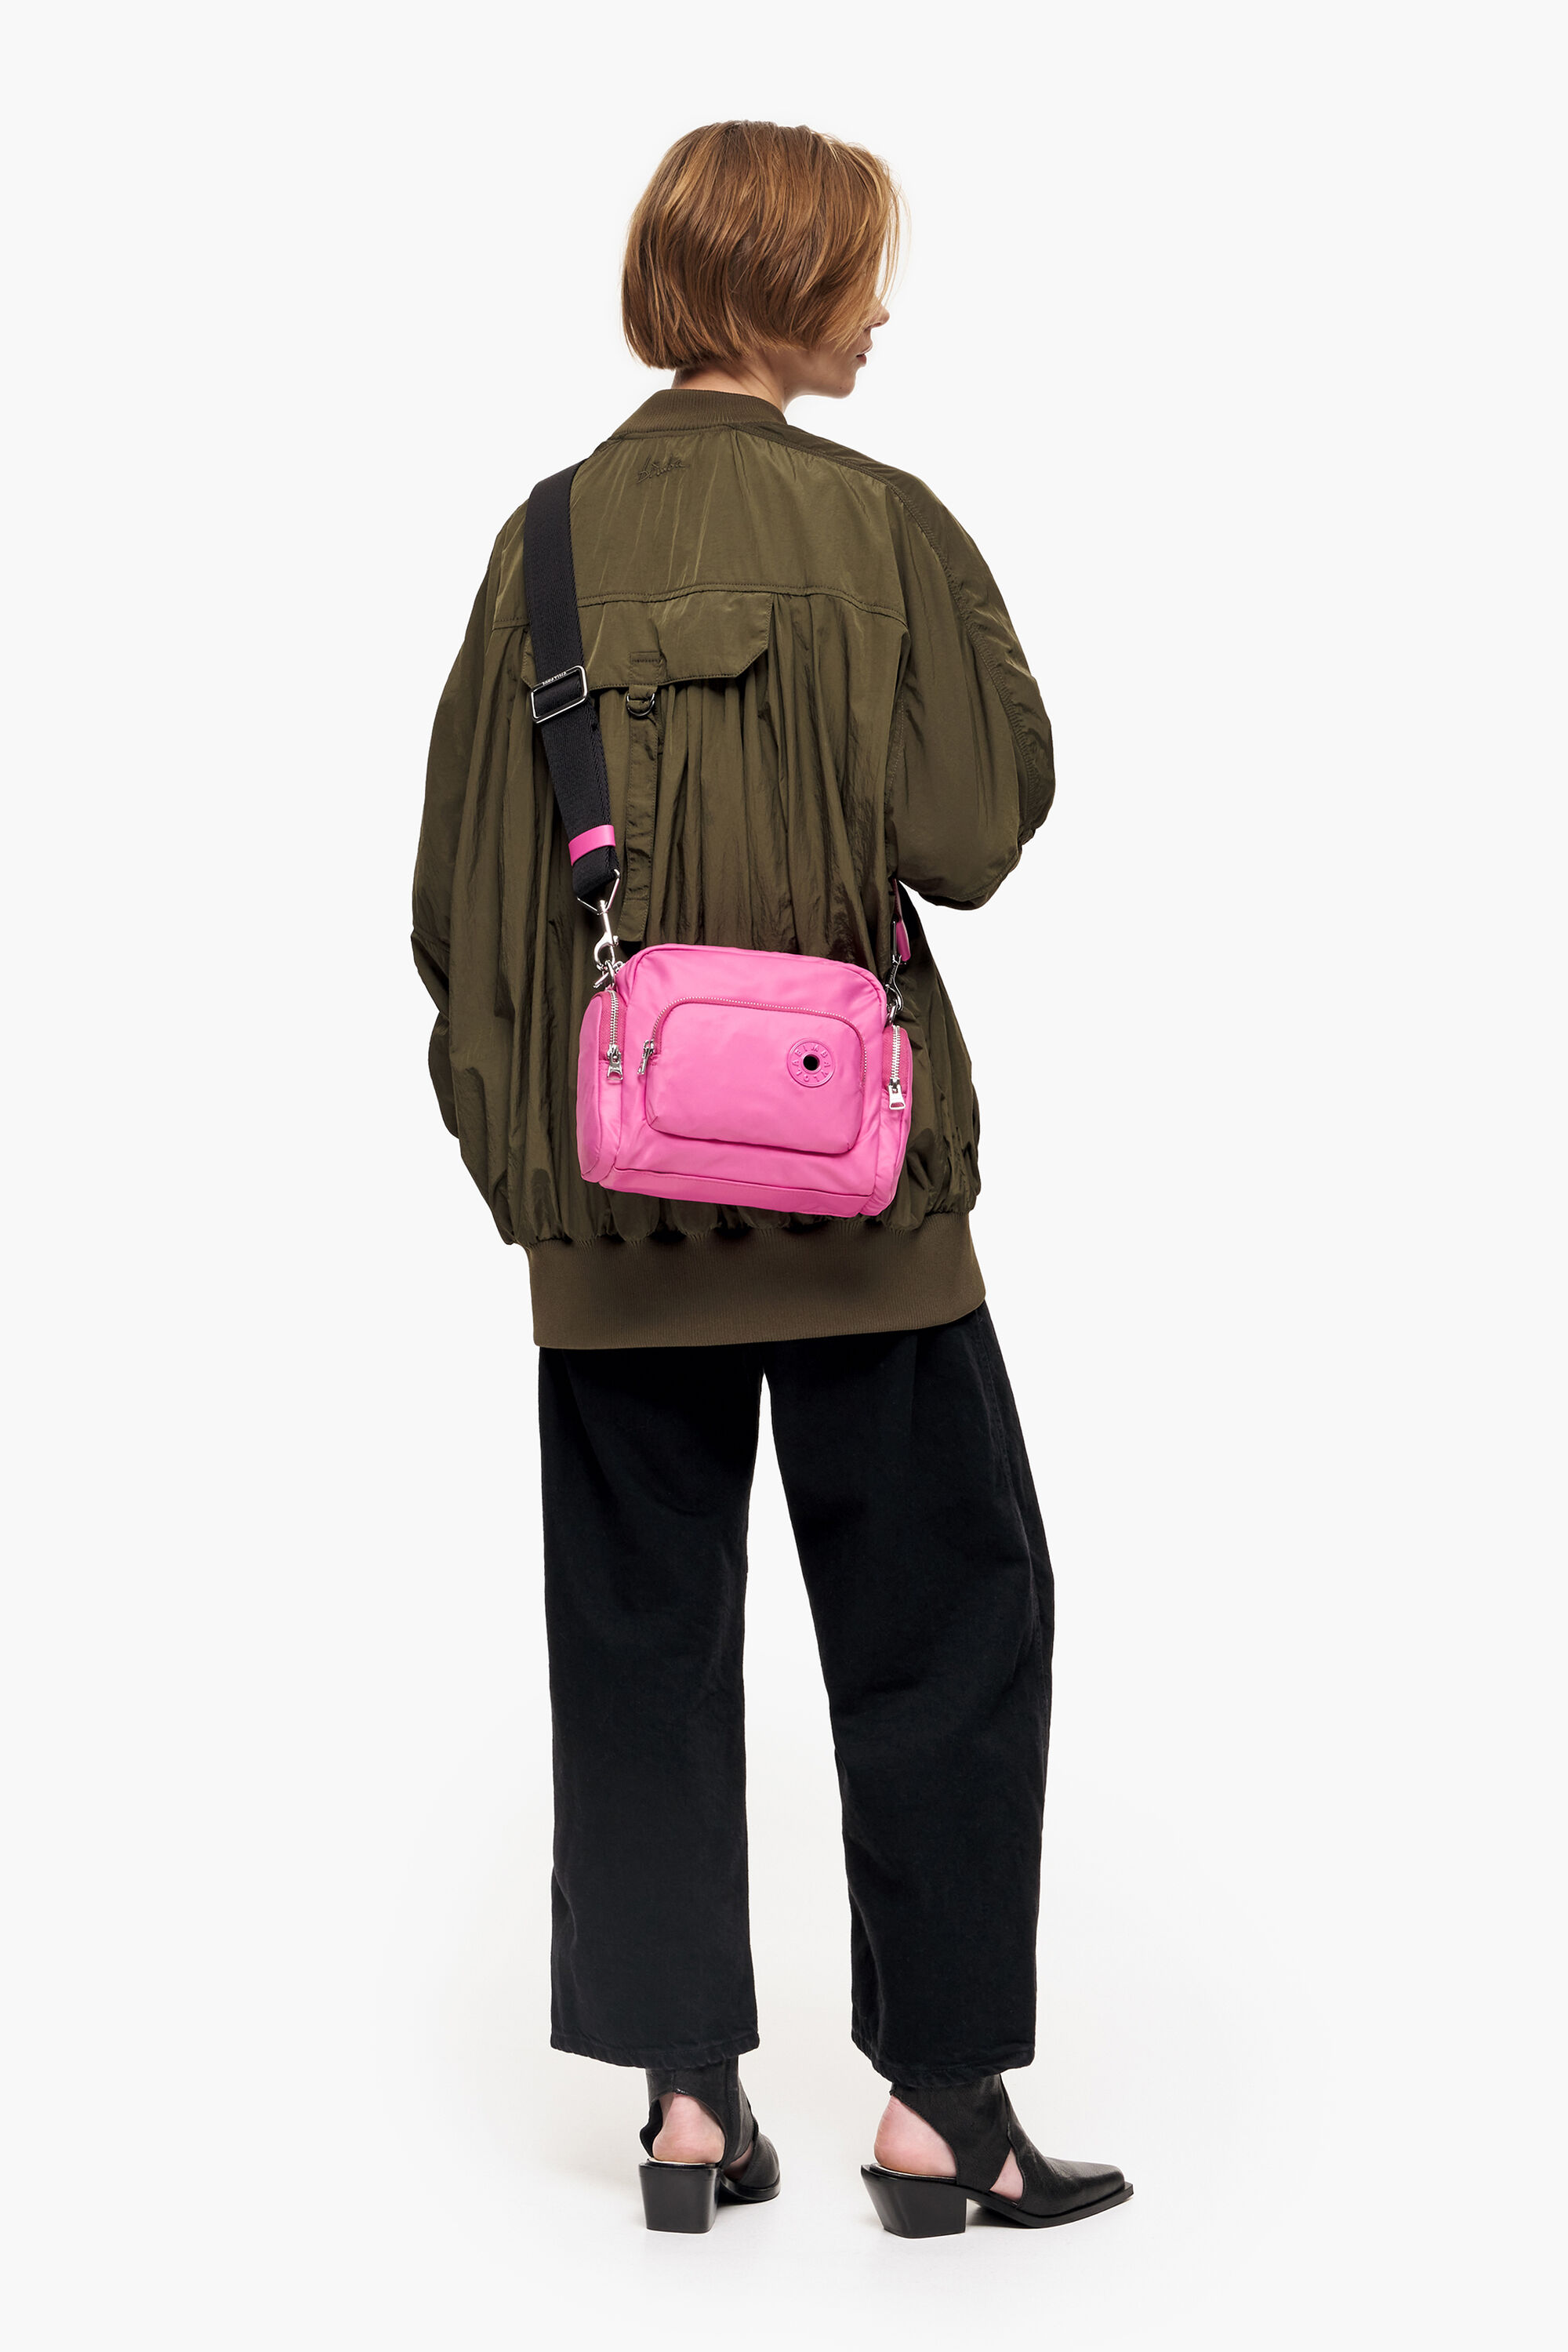 Sell Bimba Y Lola Nylon Medium Crossbody Bag - Pink